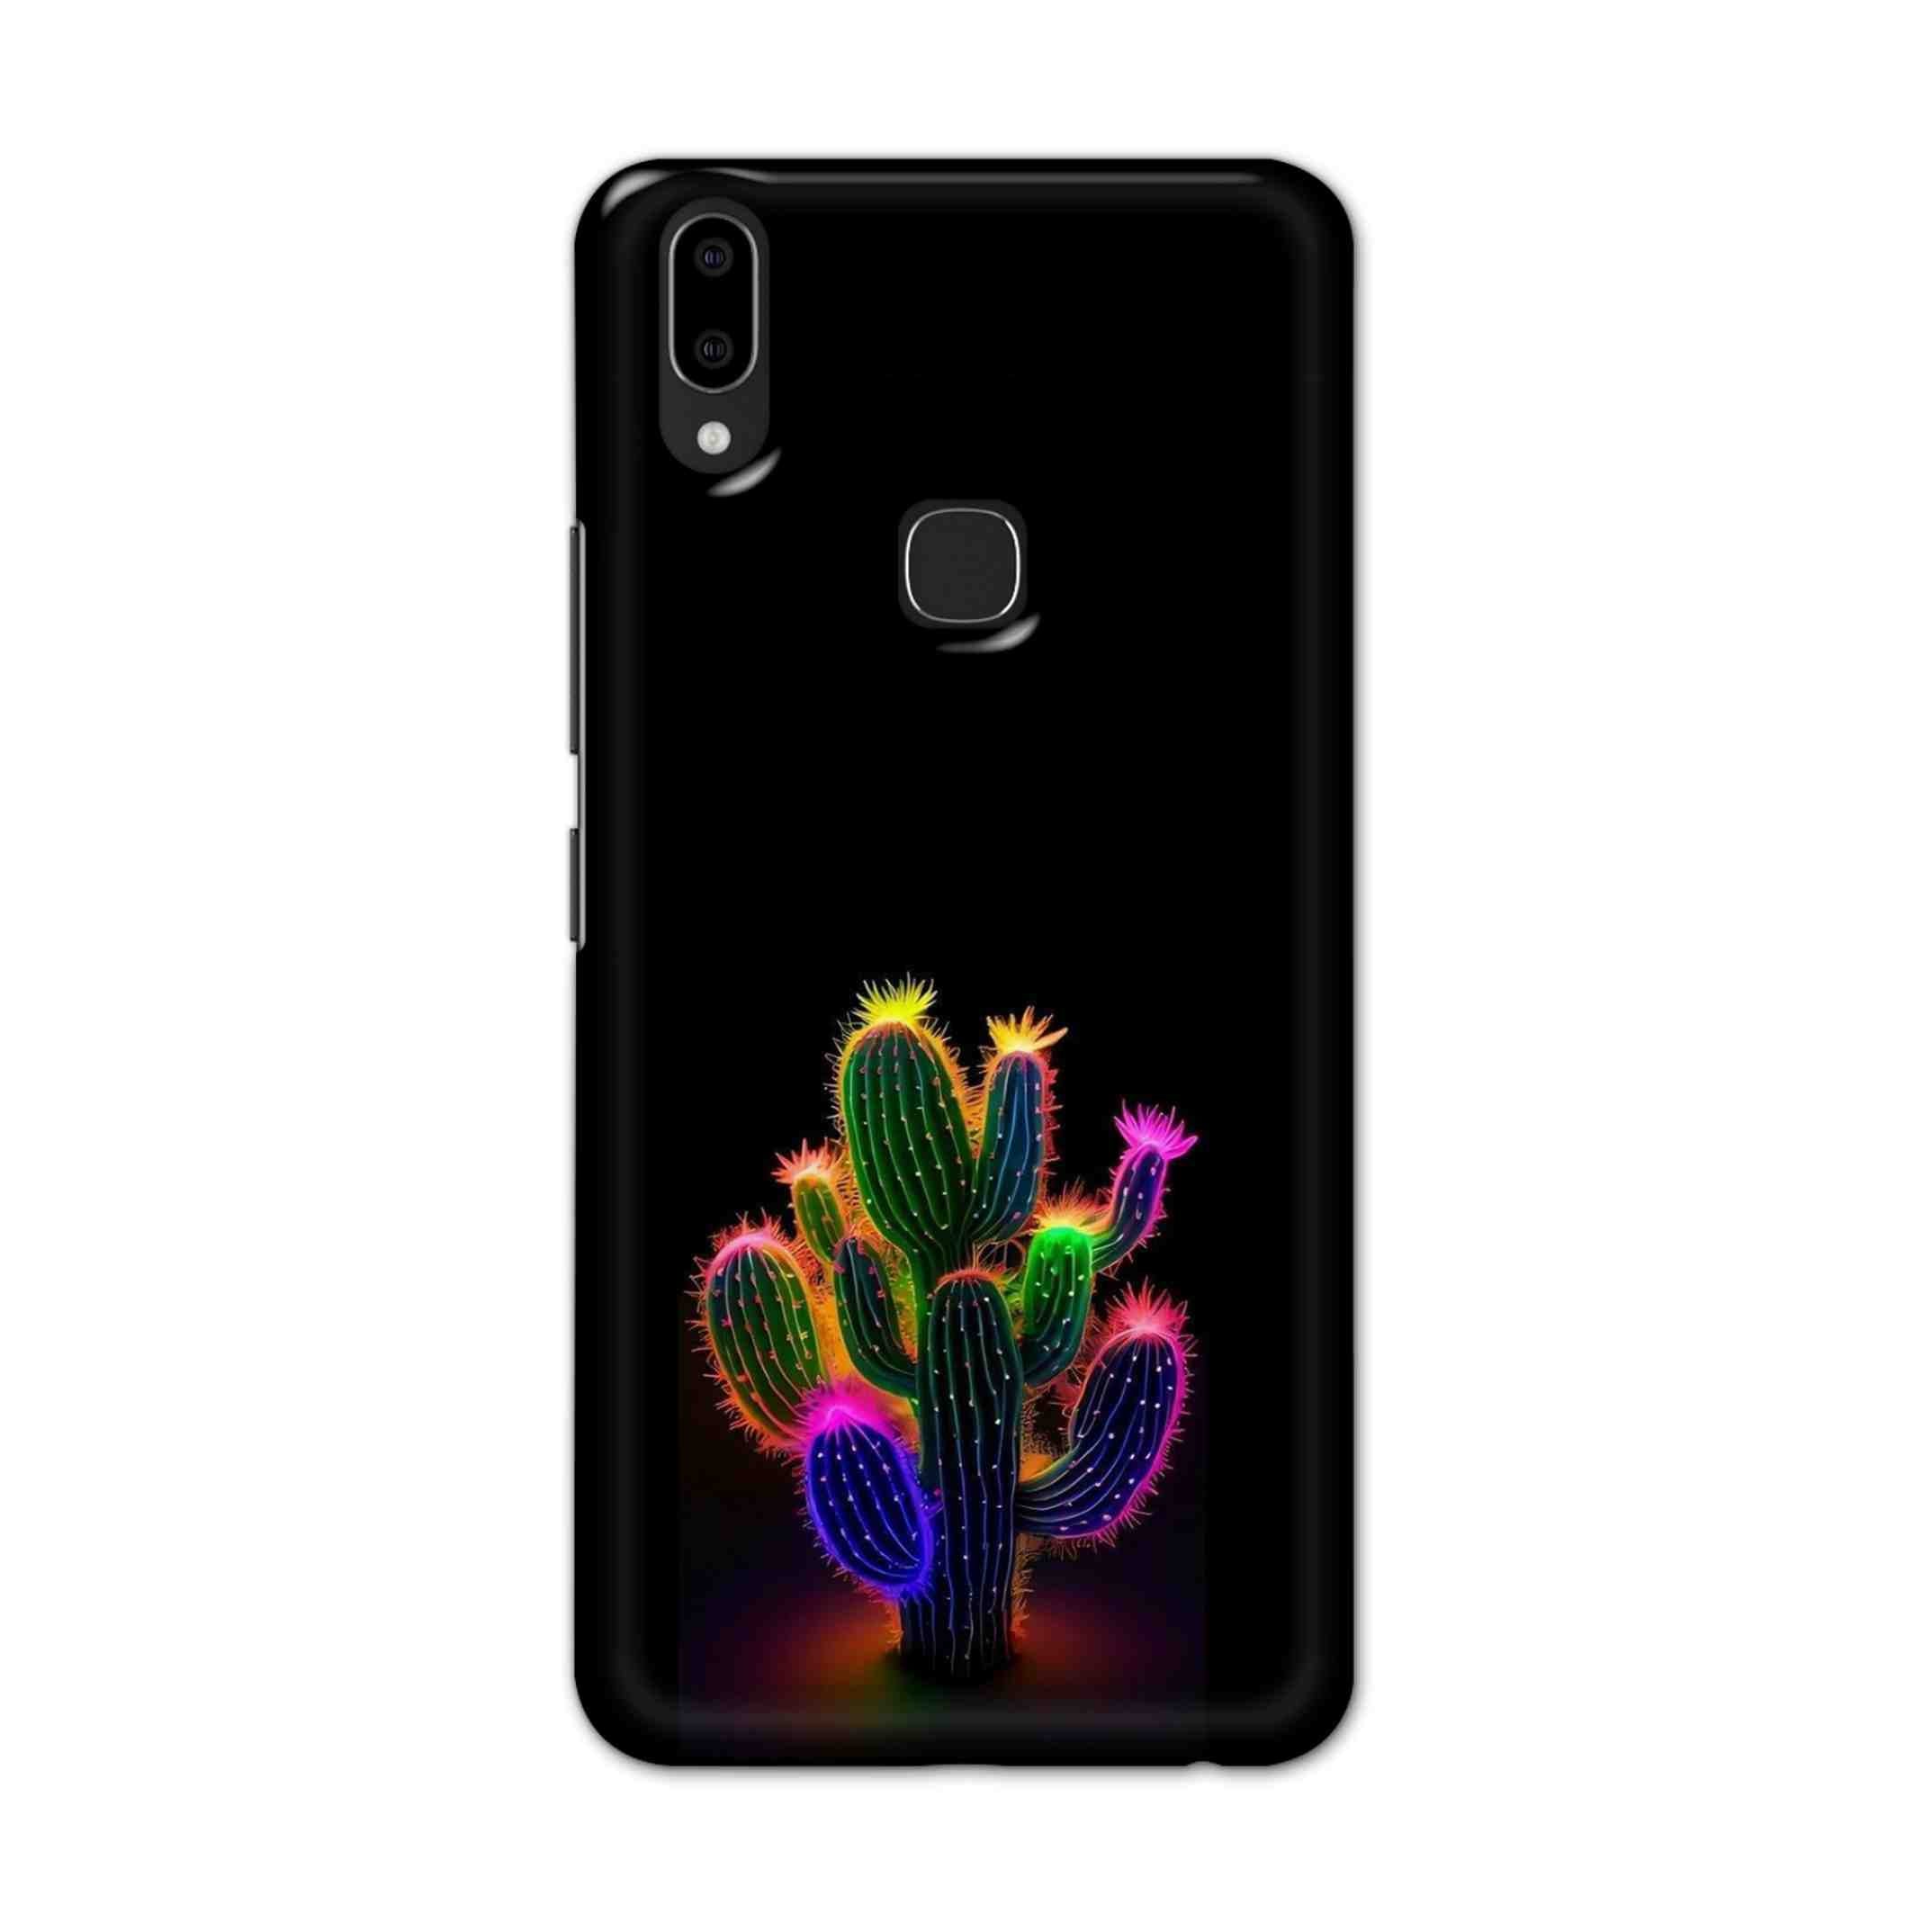 Buy Neon Flower Hard Back Mobile Phone Case Cover For Vivo V9 / V9 Youth Online